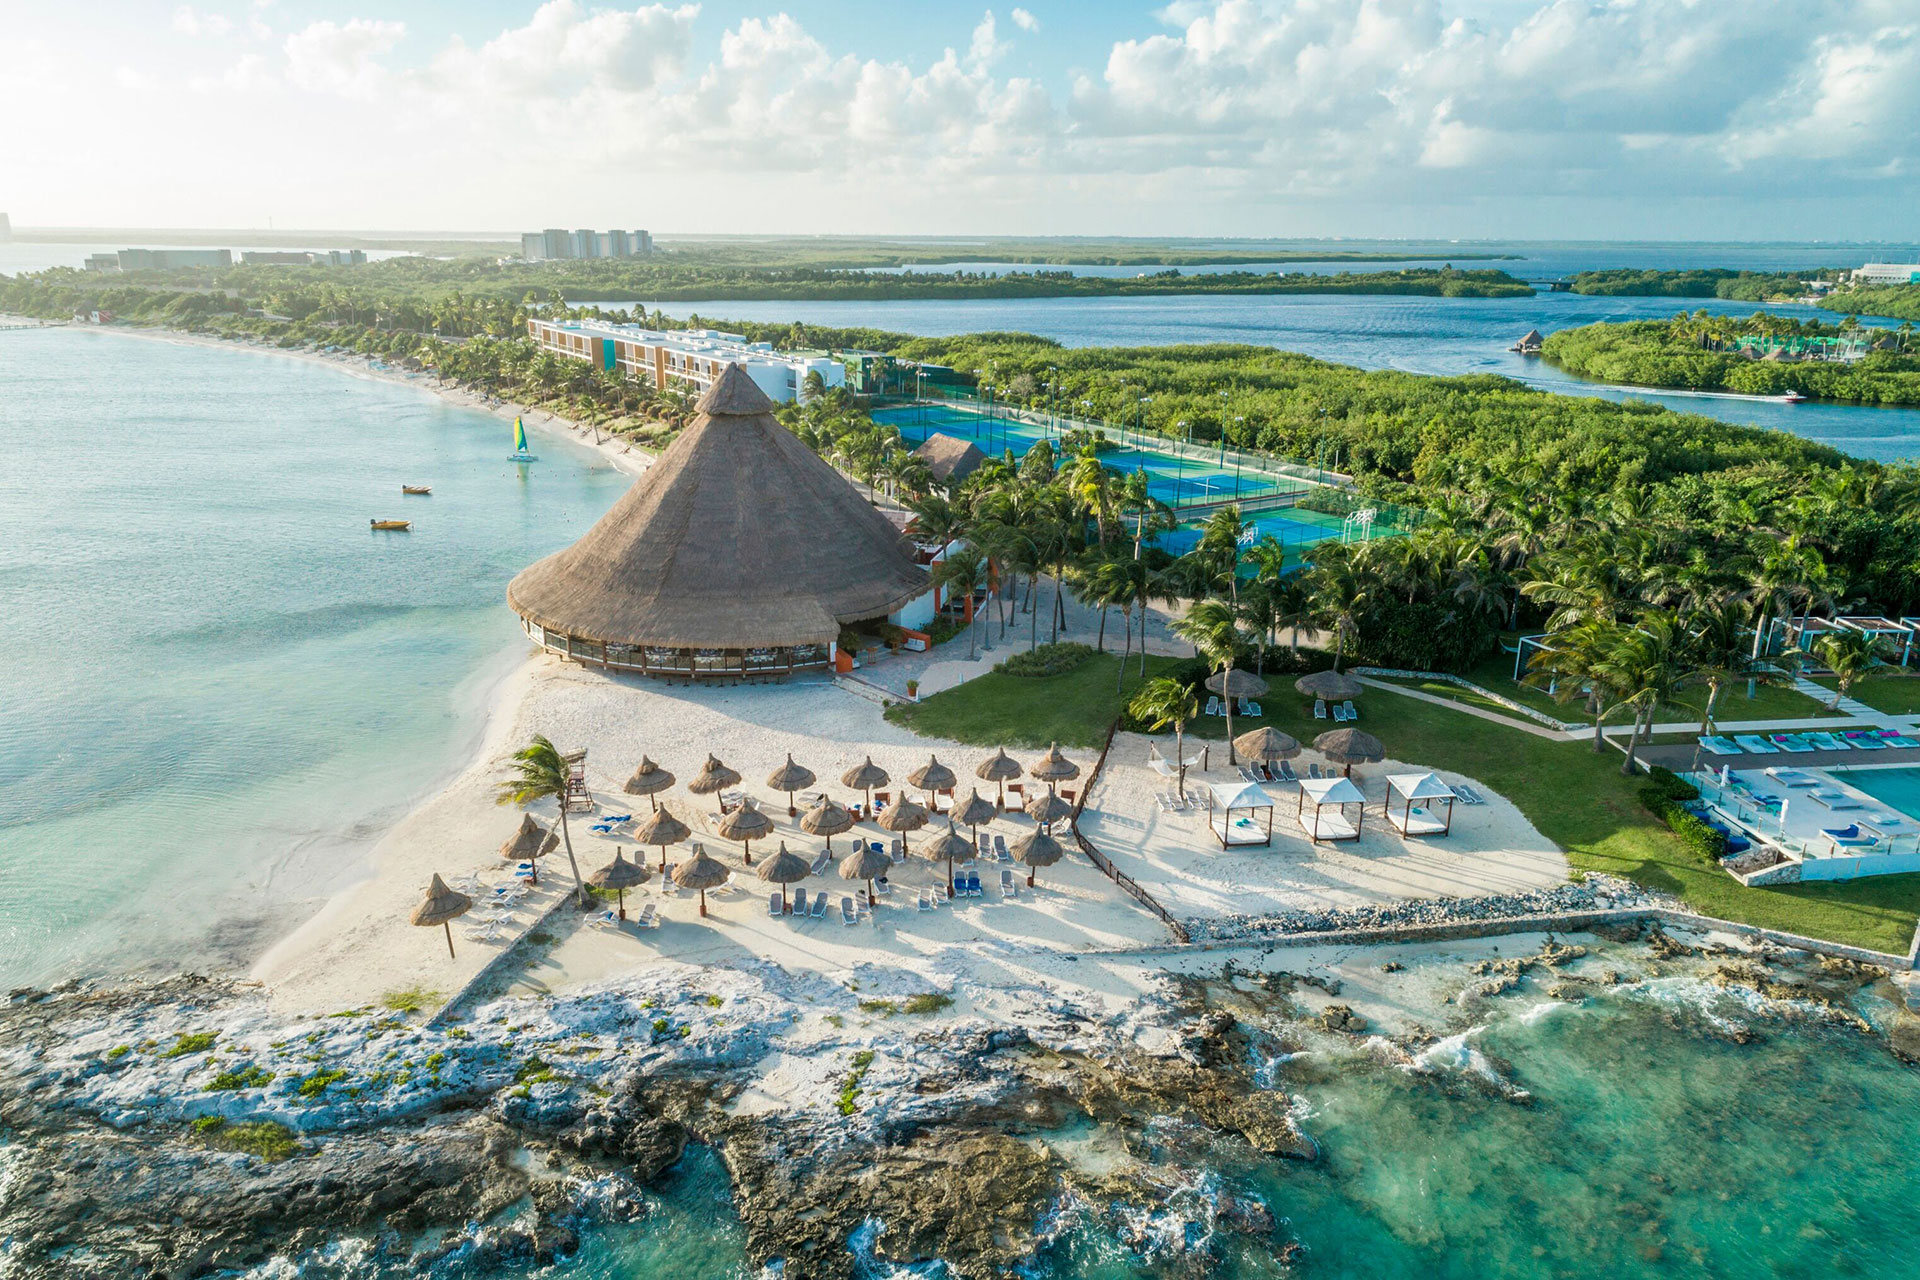 Club Med Cancun Yucatan; Courtesy of Club Med Cancun Yucatan